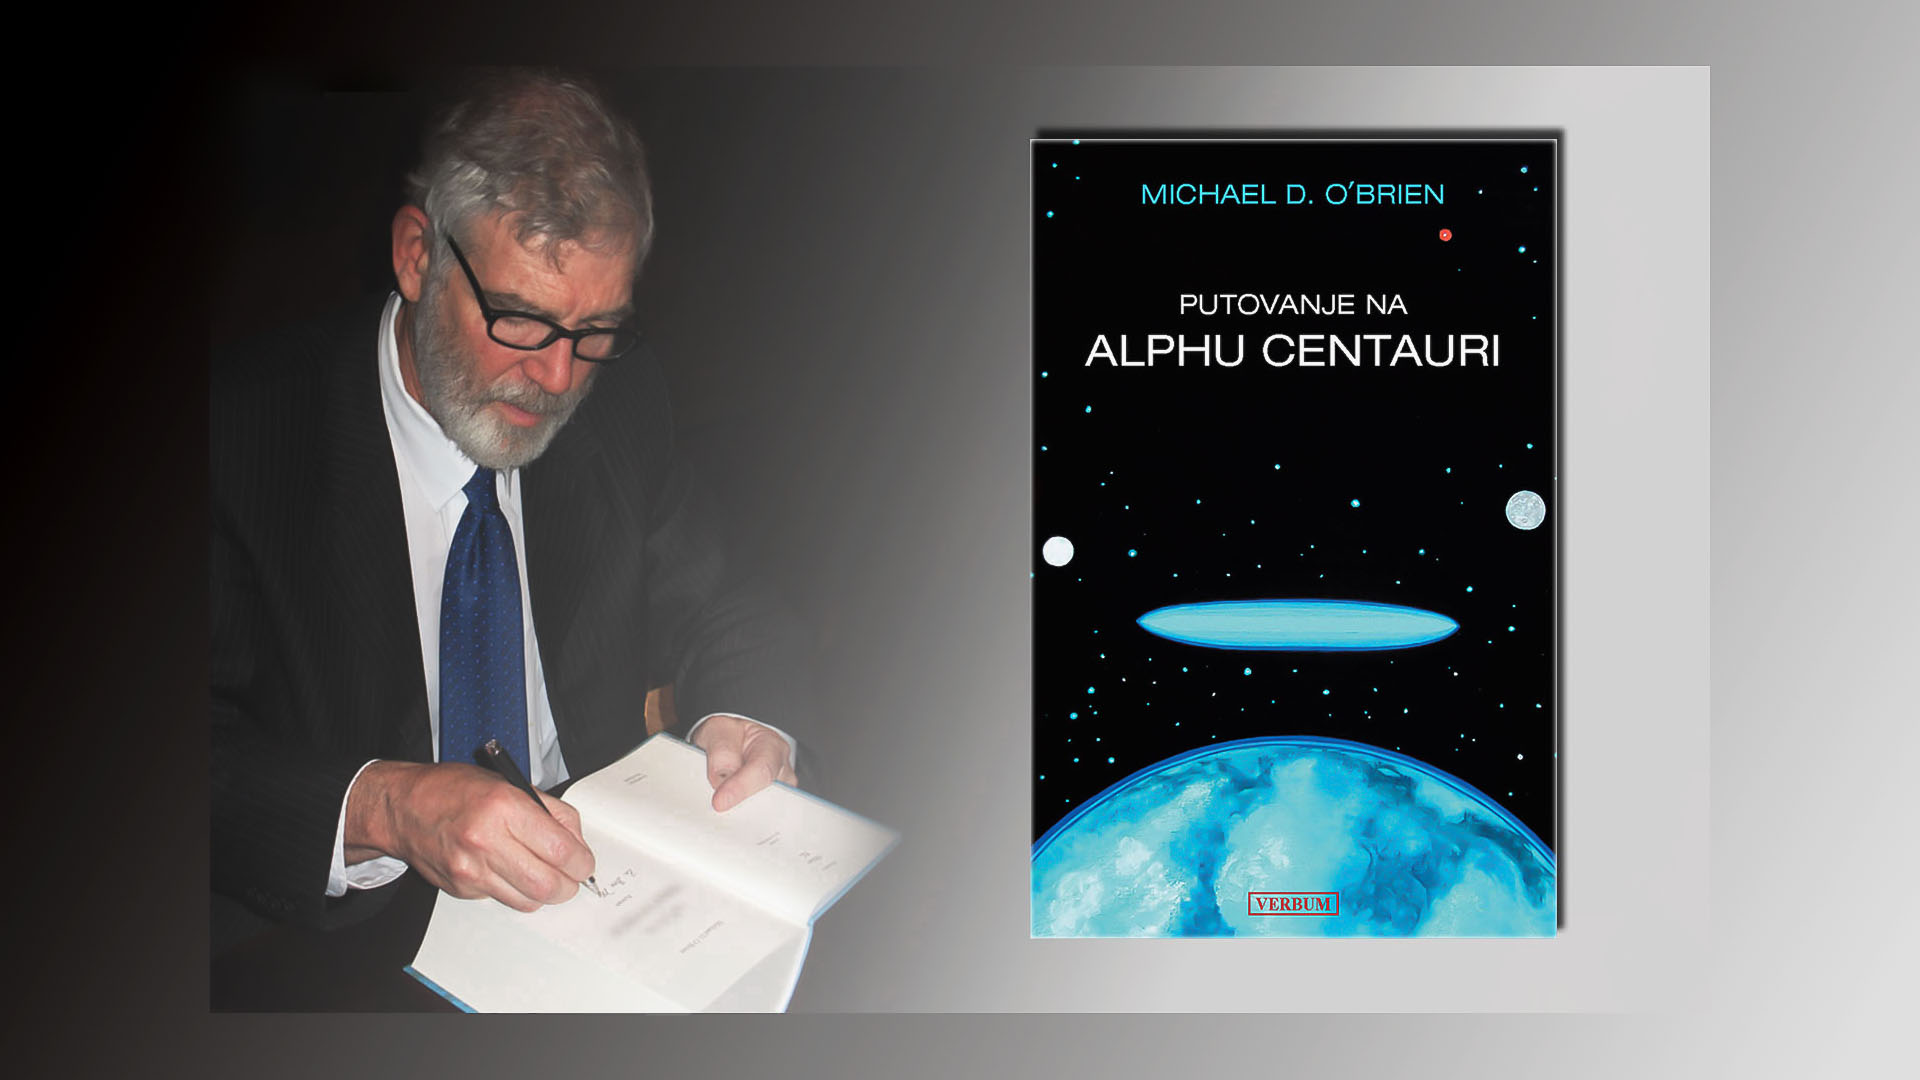 Predstavljen roman Michaela D. O'Briena "Putovanje na Alphu Centauri"